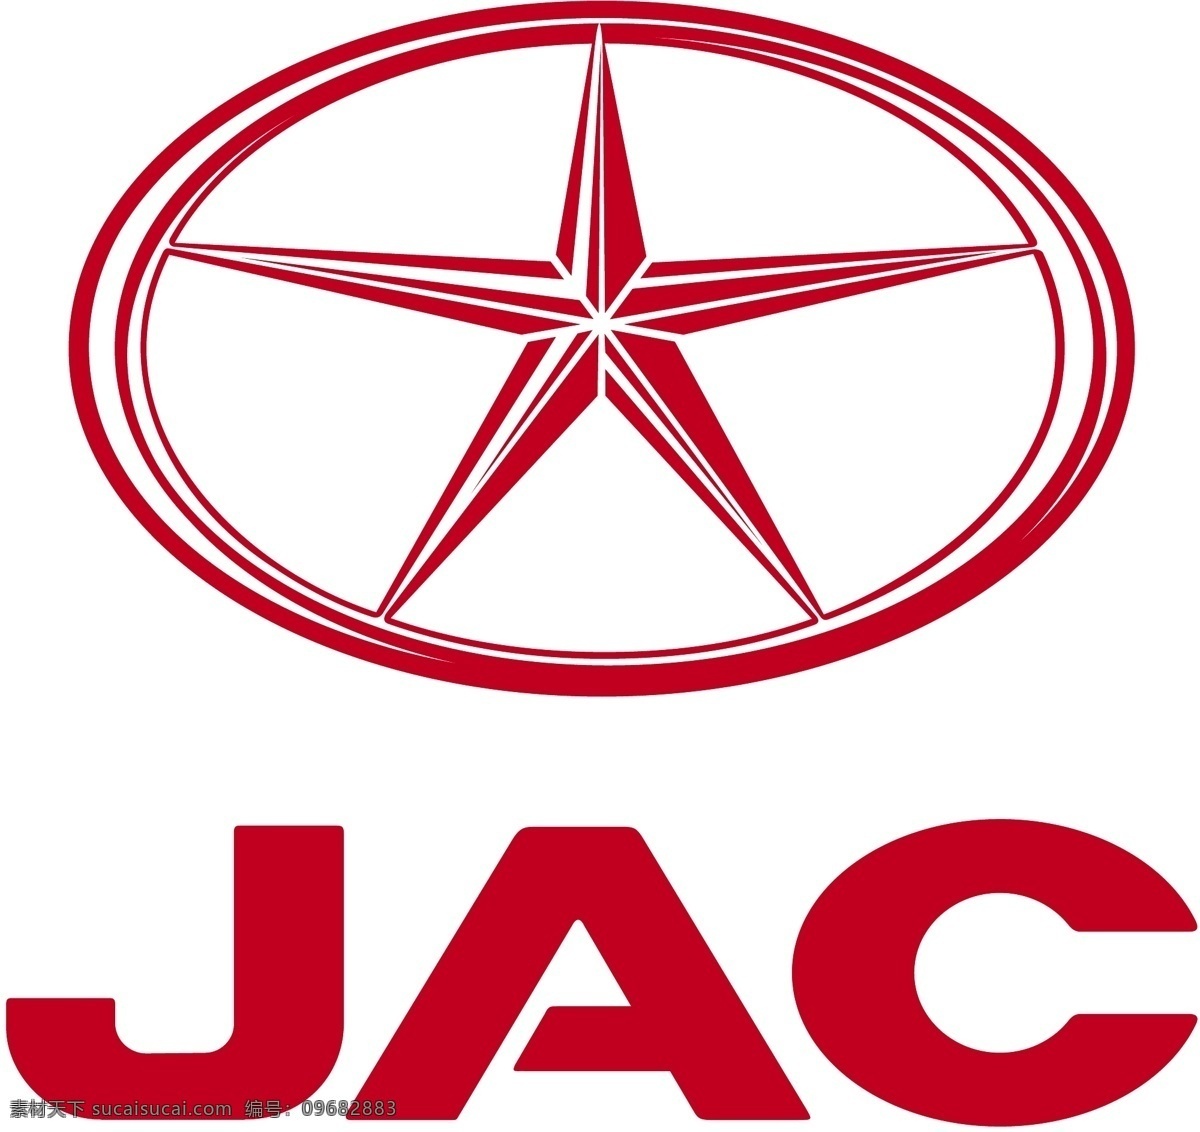 标志 jac 上下 组 江淮 瑞风 瑞风2 汽车 企业 logo 标识标志图标 矢量